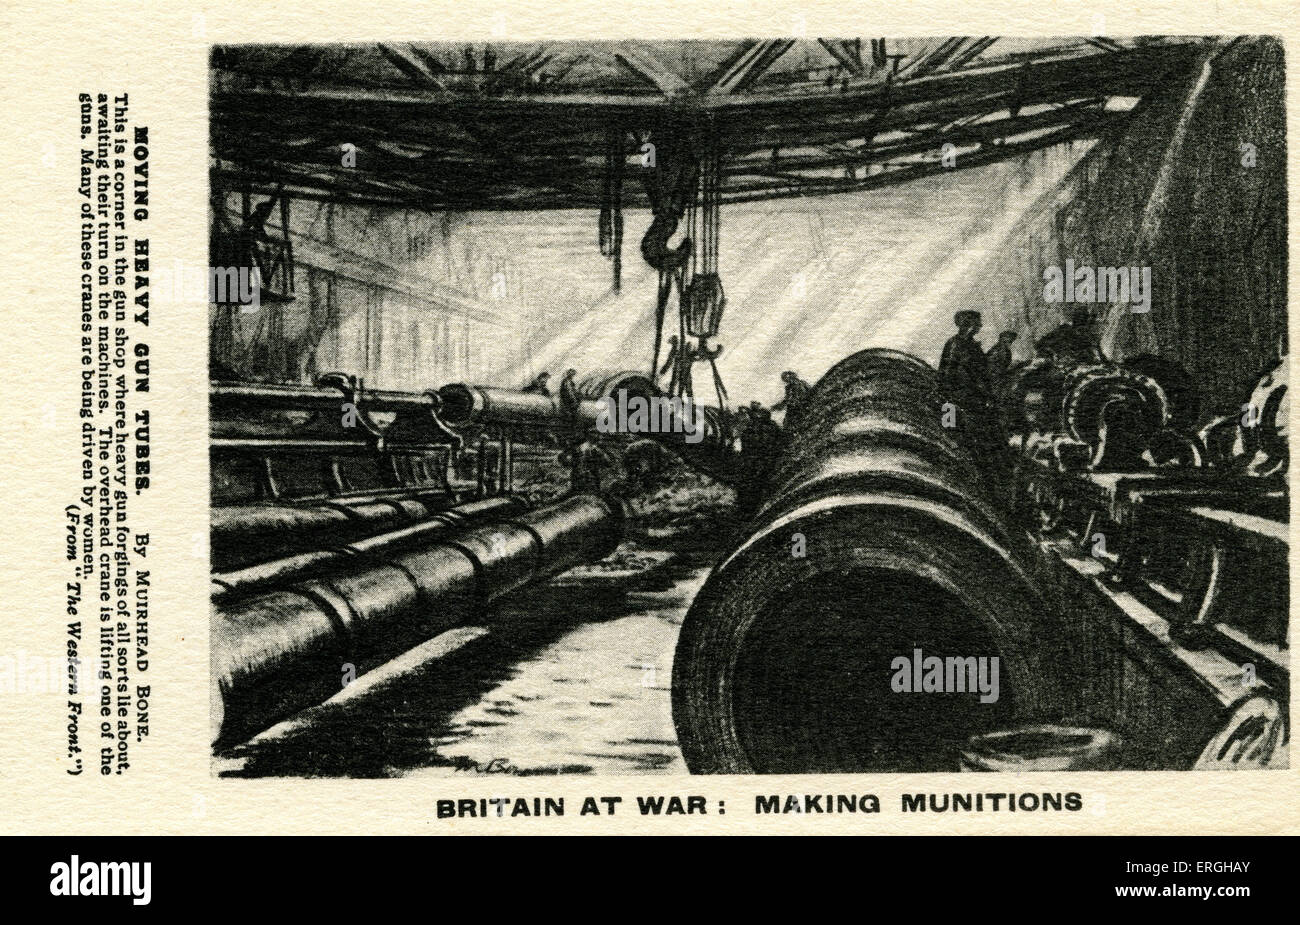 La Grande-Bretagne en guerre : faire de munitions pendant la Seconde Guerre mondiale 1. Déménagement d'artillerie lourde de tubes par Muirhead Bone : "C'est un corner dans le magasin d'armes Banque D'Images